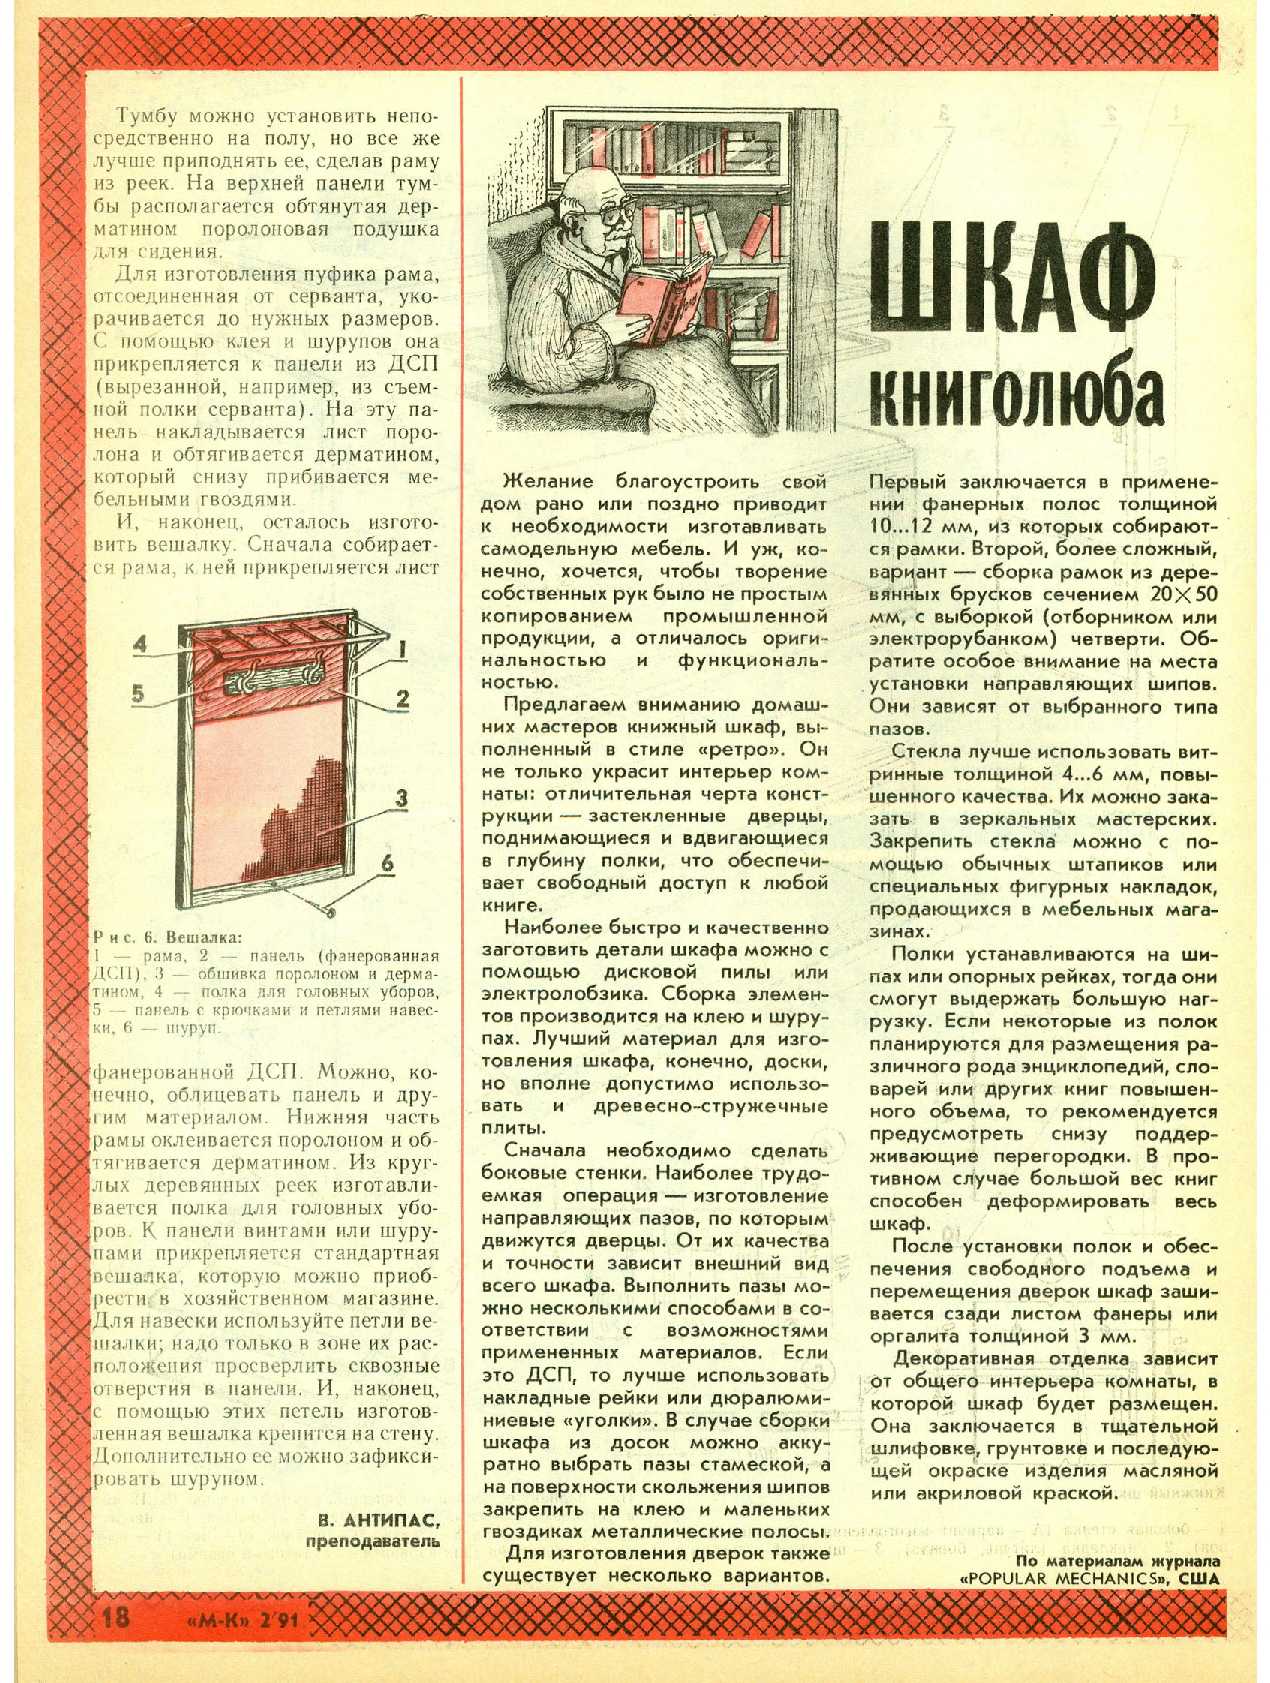 МК 2, 1991, 18 c.